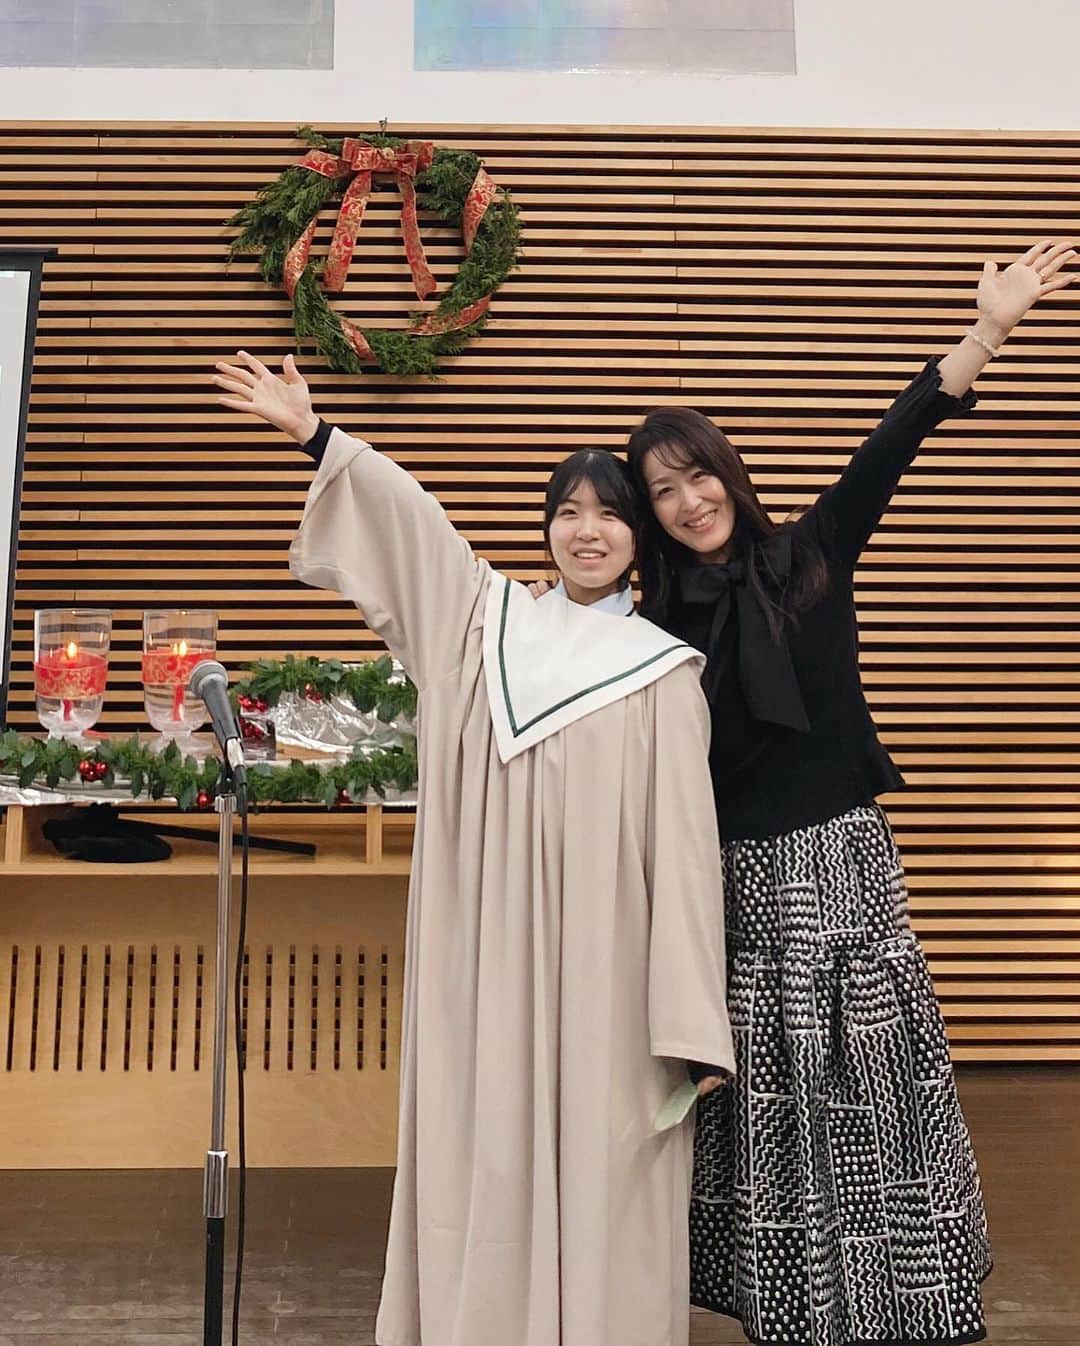 Atsukoのインスタグラム：「娘は連日、奉仕の日々で大忙しです✨  今日は私たちが毎週日曜日に礼拝している ユーカリが丘教会⛪️で クリスマス賛美の奉仕でした♪  娘が小学校一年生から通っている教会⛪️ 5年生の時に娘は洗礼を受けて クリスチャンとなりました。  部活のお仲間もクリスチャンファミリーの子たちが多く、神様への想いも共有できるようで 歌声を聞いてもチームワークの良さが伝わってくるほどみんな仲良しです  3枚目は聖歌合唱部部長の挨拶🫡 ノリや喋り方がパパにそっくりな娘  きっといつもそばにいて 見守ってくれているのでしょうね♡  4枚目は聖歌合唱部の皆さんの 天使の歌声👼🪽  何度聞いても涙が溢れます✨✨✨  清い生徒達の歌声に 心が洗われました🤭✨  差し入れにクリスマスクッキー🍪を プレゼント🎁  あっ、これ美味しいやつ😋♡ と喜んでもらえました♪  明治屋でみのりちゃんへのプレゼントで購入したけど、みんなで食べた方が数倍美味しくなるね♡  ブランド名は忘れちゃった🤭💦  今日もみのりちゃんのお友達が みのりのママと写真撮りたい♡と言ってくれて🤭💕  またまた撮影会^_^  娘は愛のある方々に愛されて なんて幸せなんでしょう🤍  このまま、すくすくみなさんに育てて頂いて 自分の使命を見つけて欲しいです✨✨✨  この聖歌合唱部のお仲間はきっと一生のお友達になるでしょうね♪  みんなすくすく大きくなぁれ🤍🤍  #聖歌合唱部 #ユーカリが丘教会 #日本キリスト教団 #教会 #賛美 #クリスチャン #部長挨拶 #ノリがいい #パパそっくり #愛のある環境 #一生のお友達」